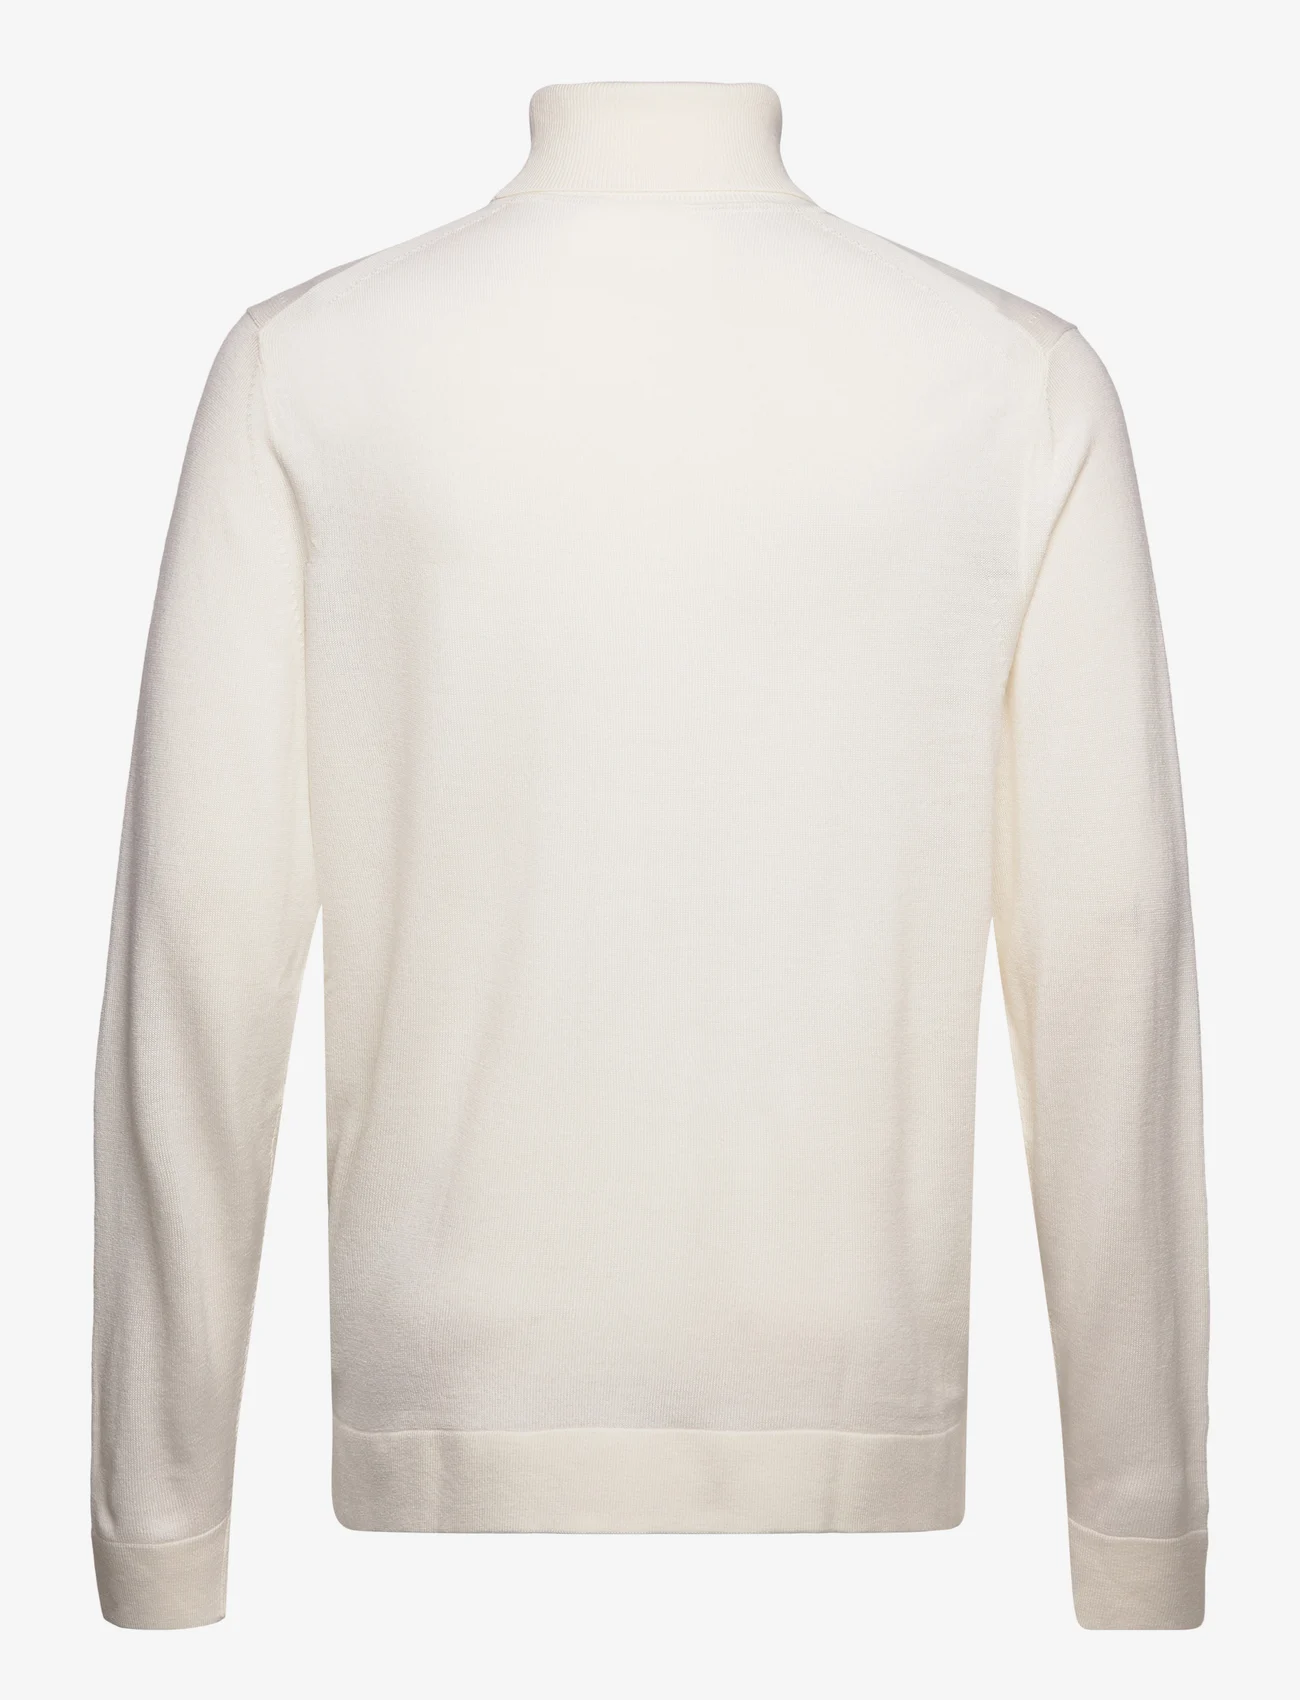 Calvin Klein - MERINO RWS TURTLE NECK - podstawowa odzież z dzianiny - egret - 1